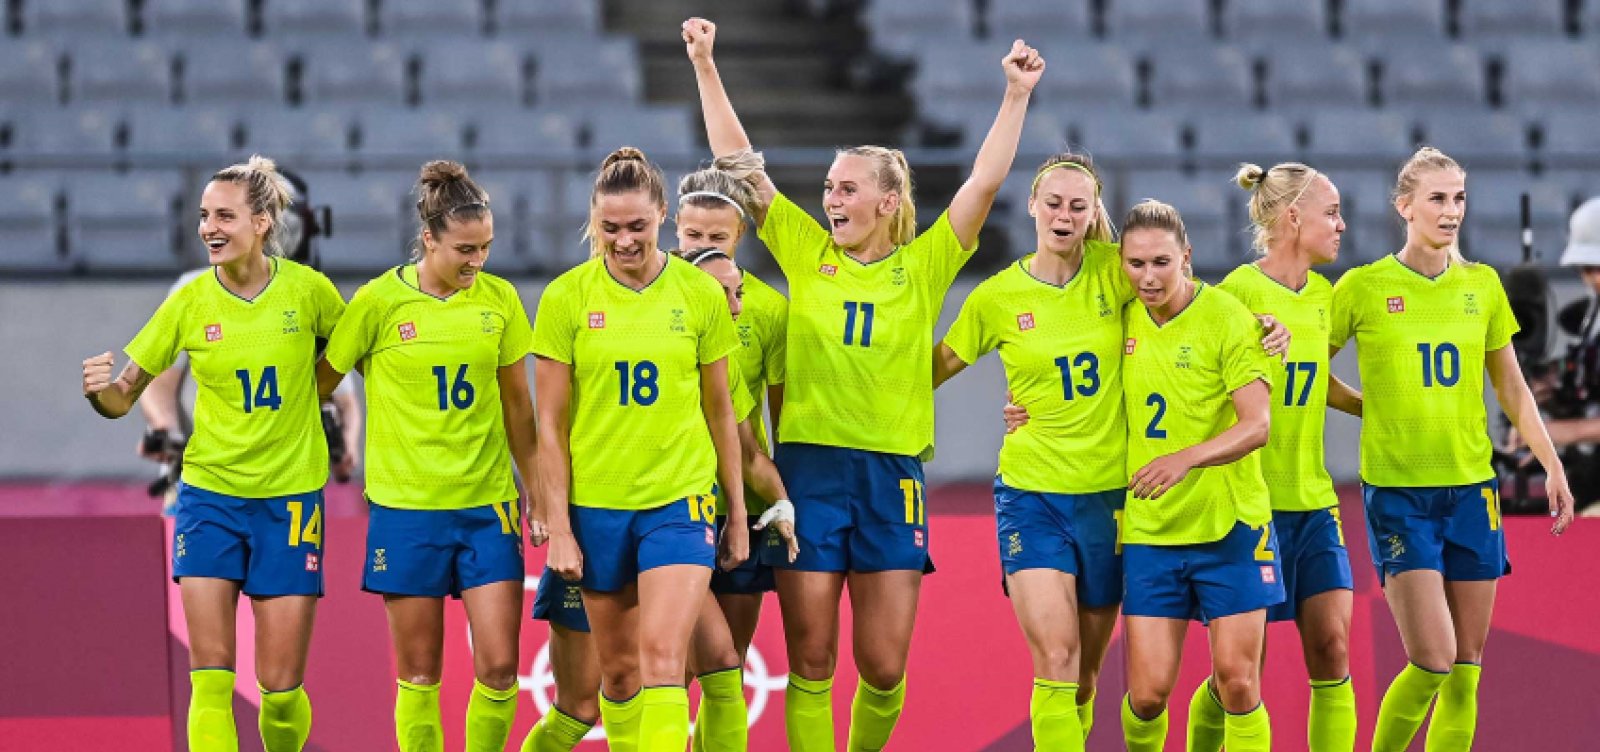 Com decisão emocionante nos pênaltis, Suécia derruba favoritismo dos EUA e avança na Copa do Mundo 